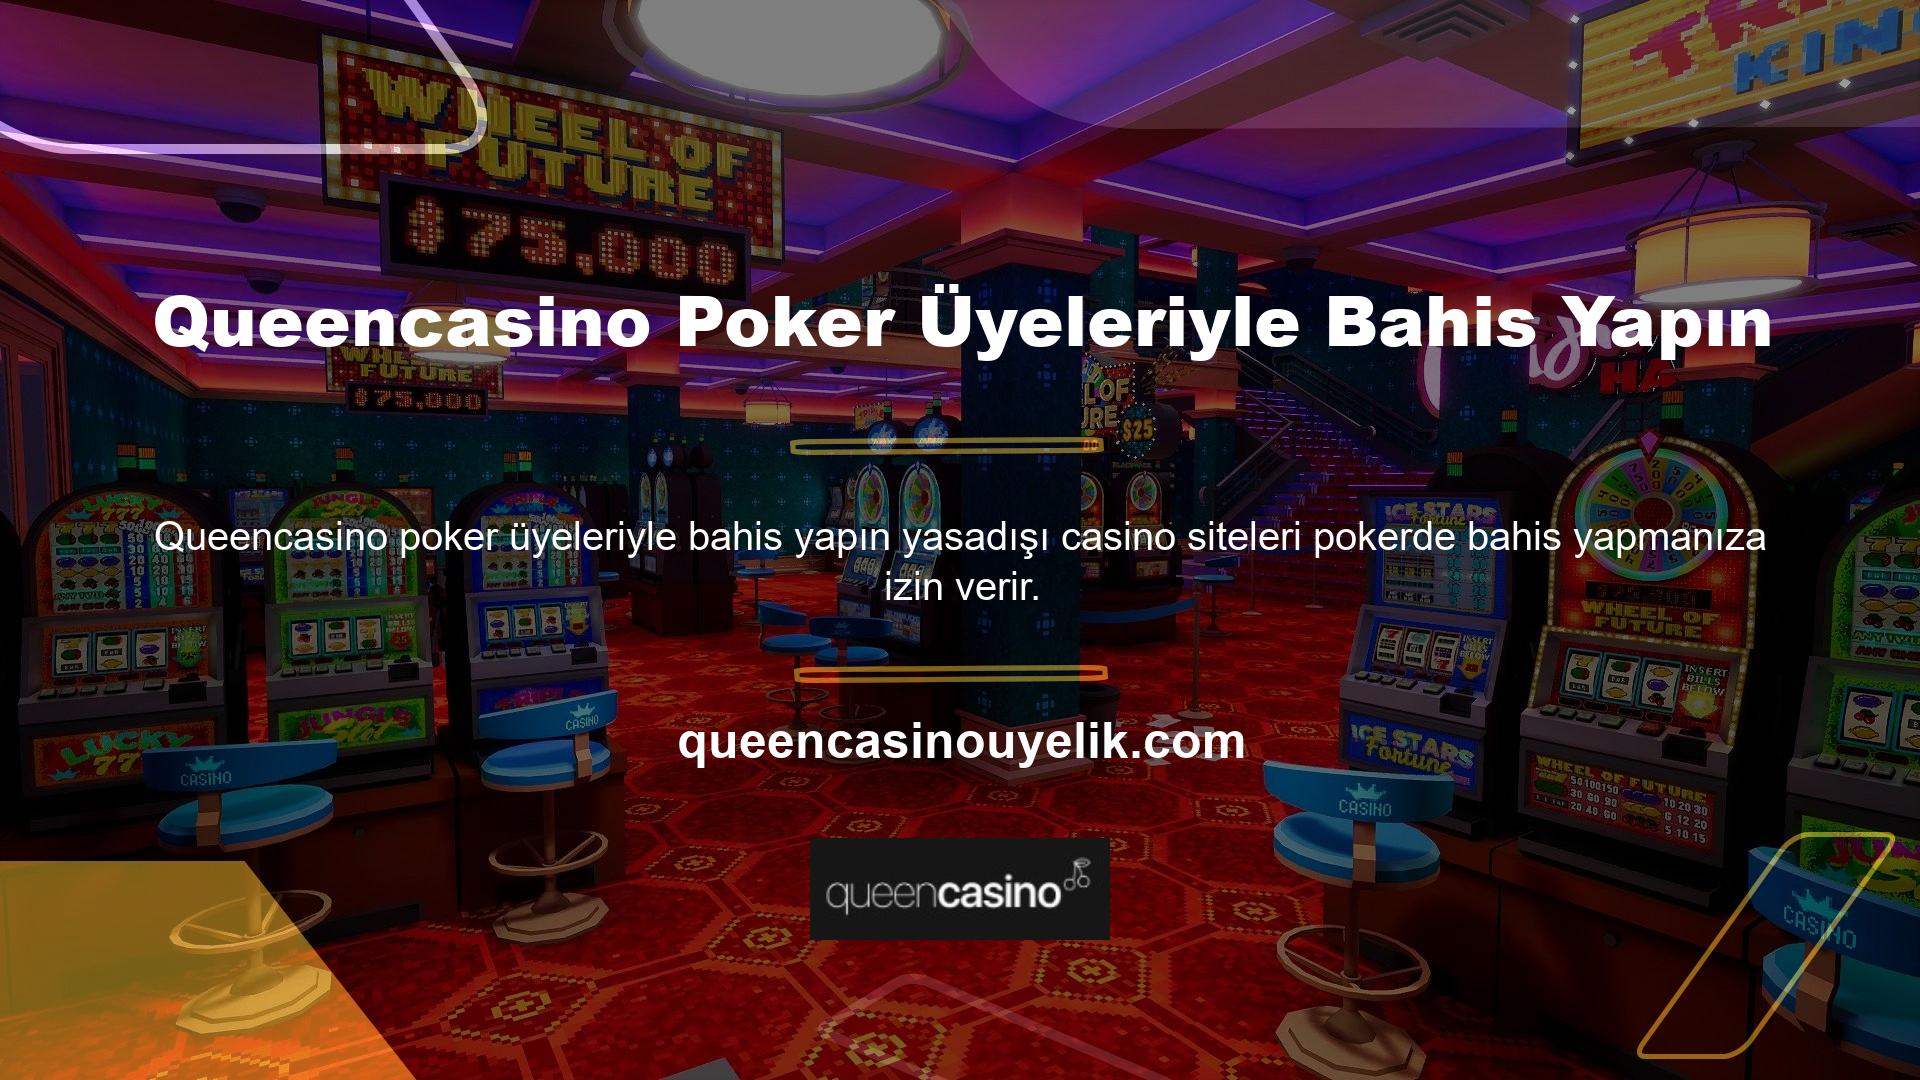 Bunun için Queencasino Pokere bahis yapın, üyelik sitesine kayıt olun ve para yatırın